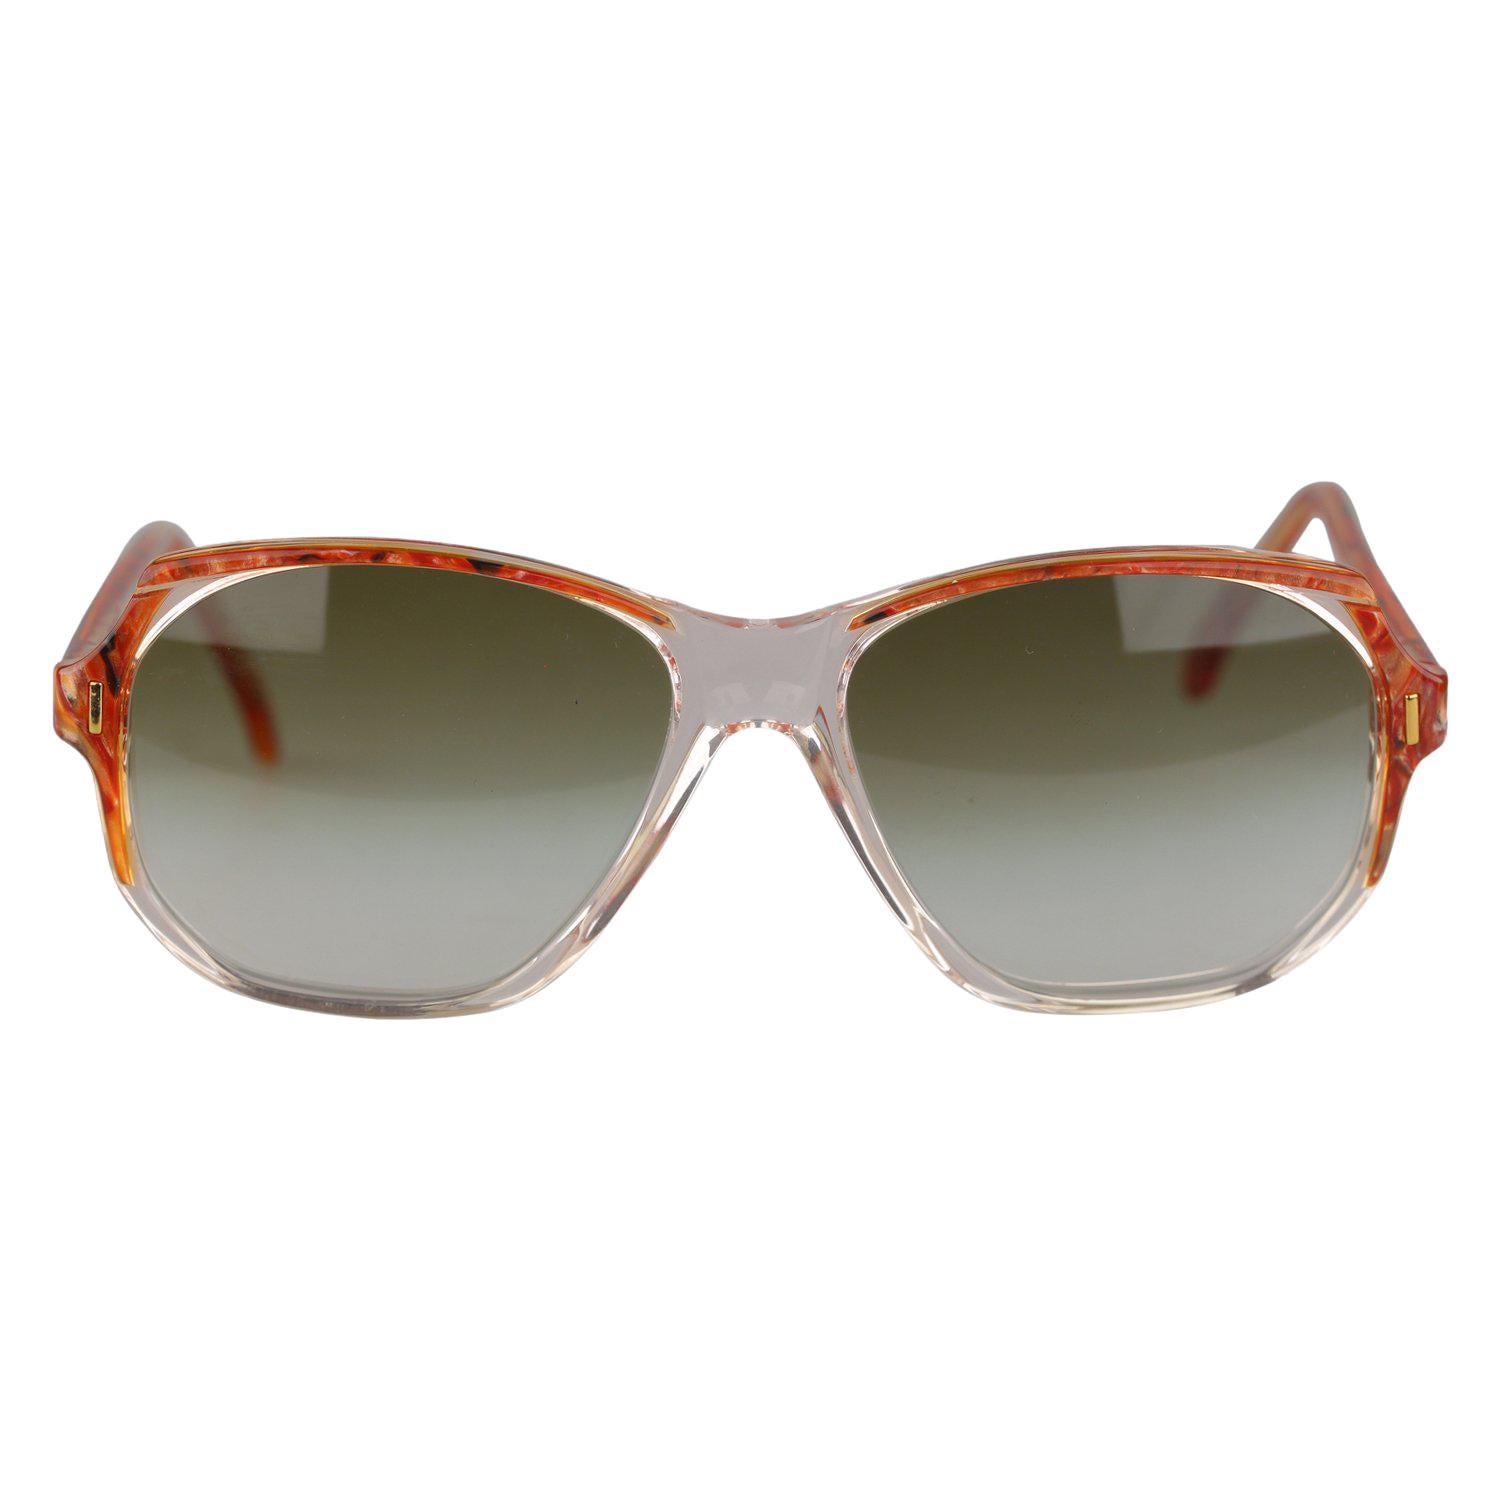 Yves Saint Laurent Vintage Sunglasses mod Salamine 54mm New Old Stock